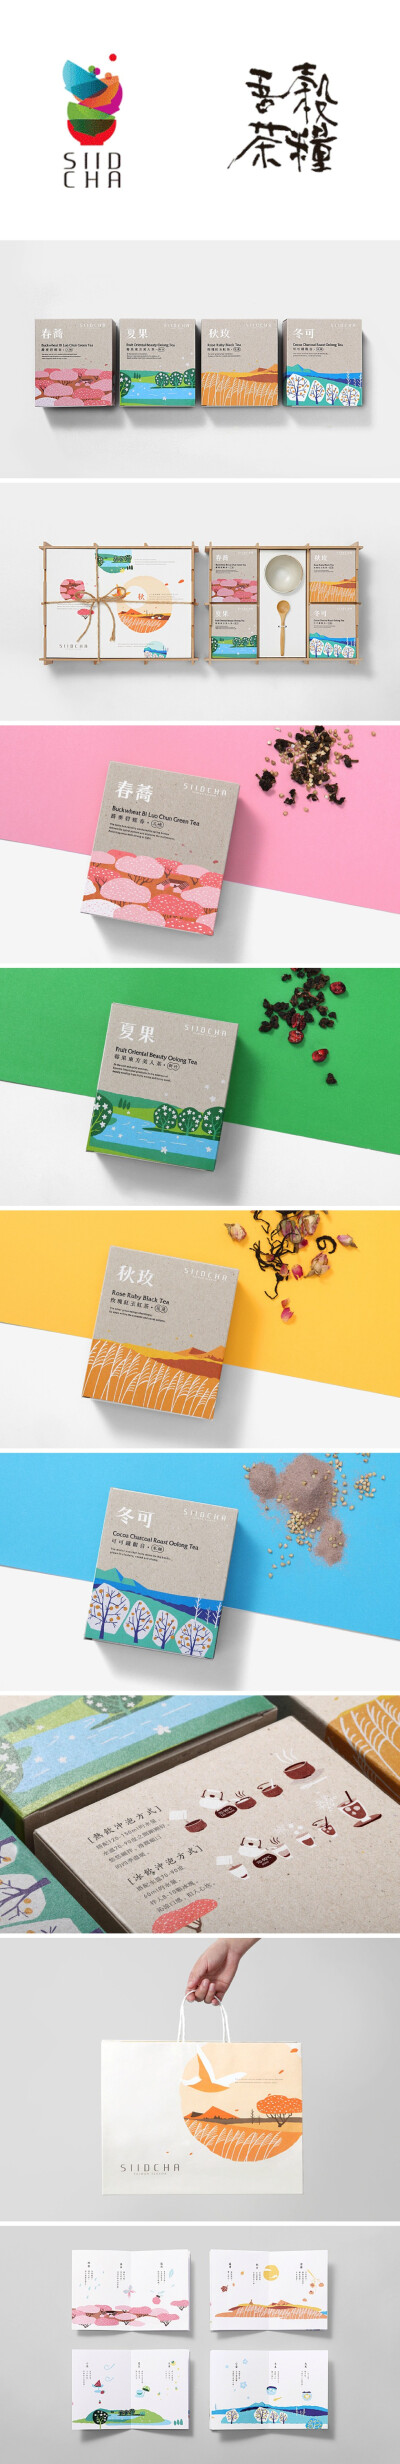 台湾《吾穀茶糧》包装 来自台湾设计团队VICTOR DESIGN